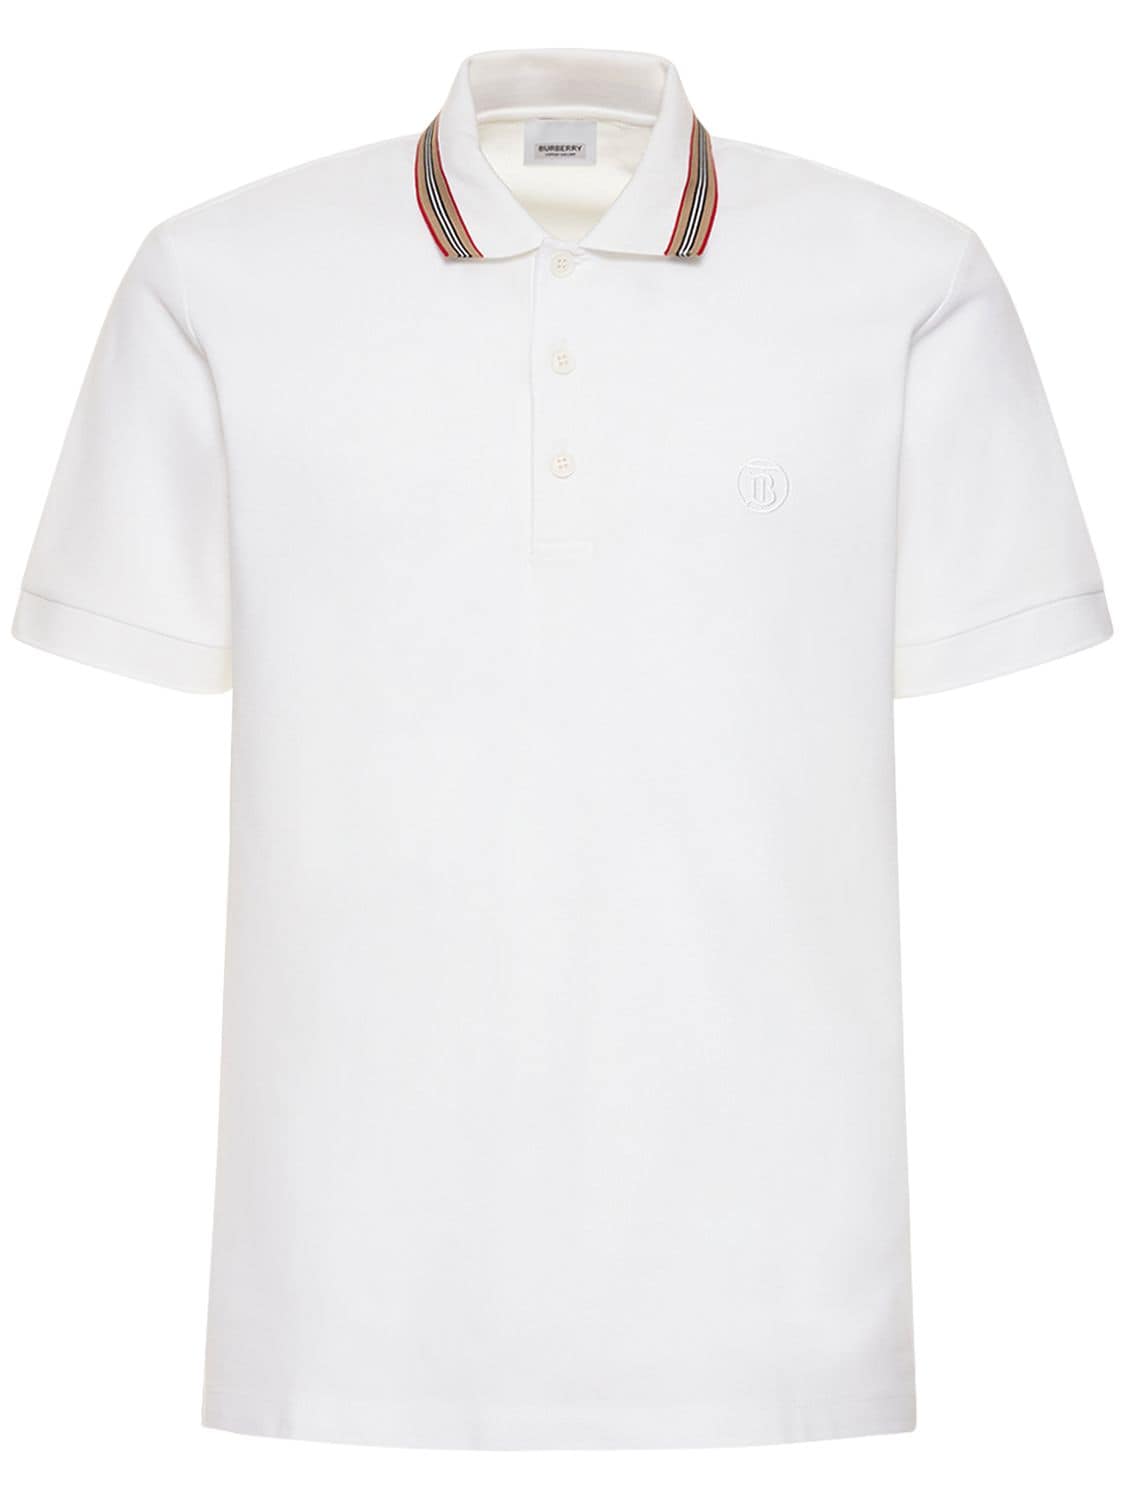 gelijktijdig Uitstekend Autorisatie BURBERRY Tb Logo & Icon Stripe Cotton Piqué Polo voor mannen